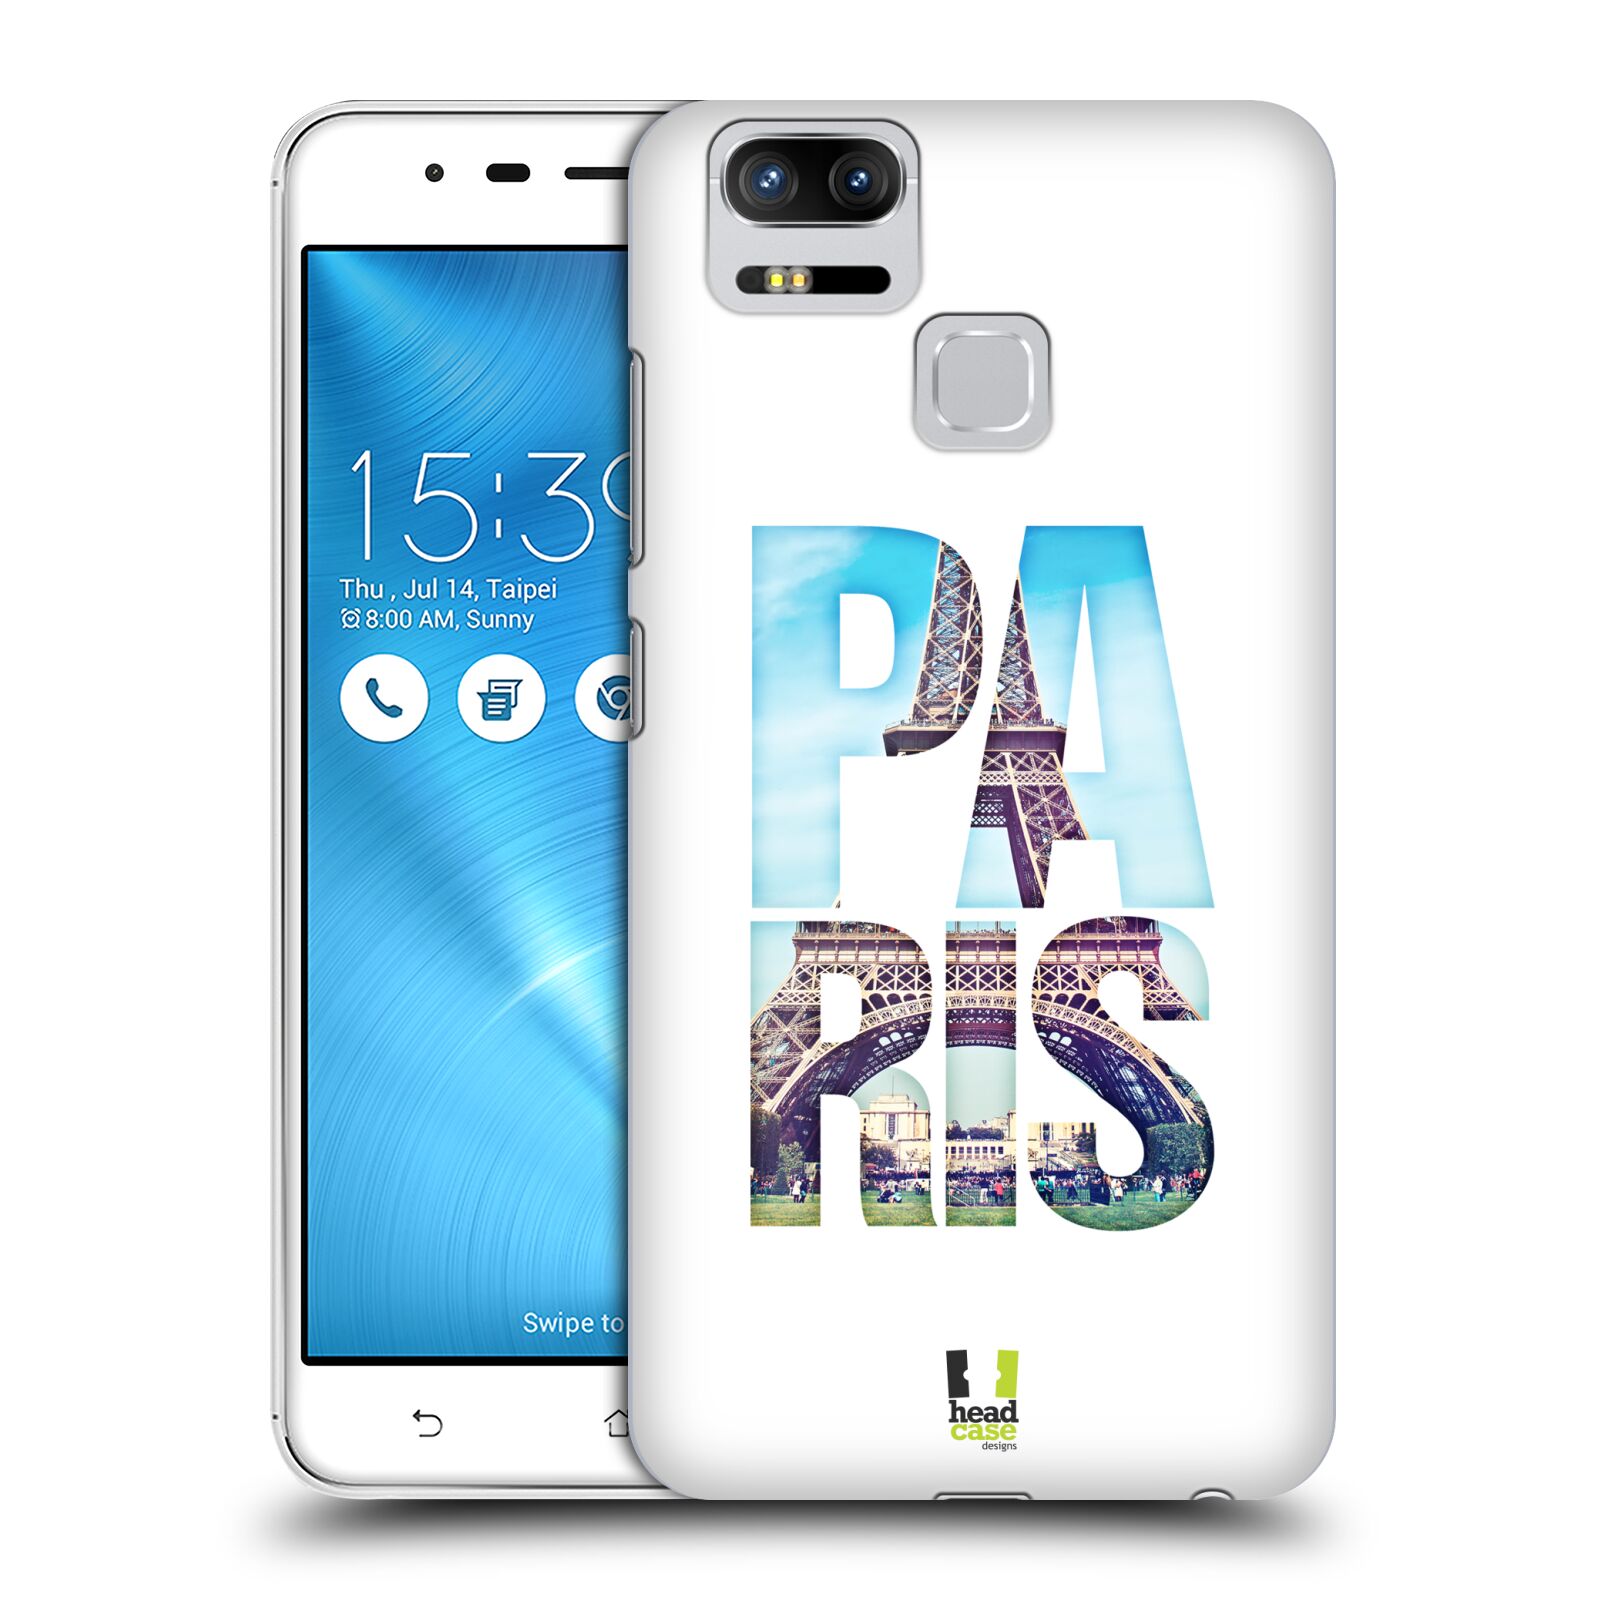 HEAD CASE plastový obal na mobil Asus Zenfone 3 Zoom ZE553KL vzor Města foto a nadpis FRANCIE, PAŘÍŽ, EIFFELOVA VĚŽ